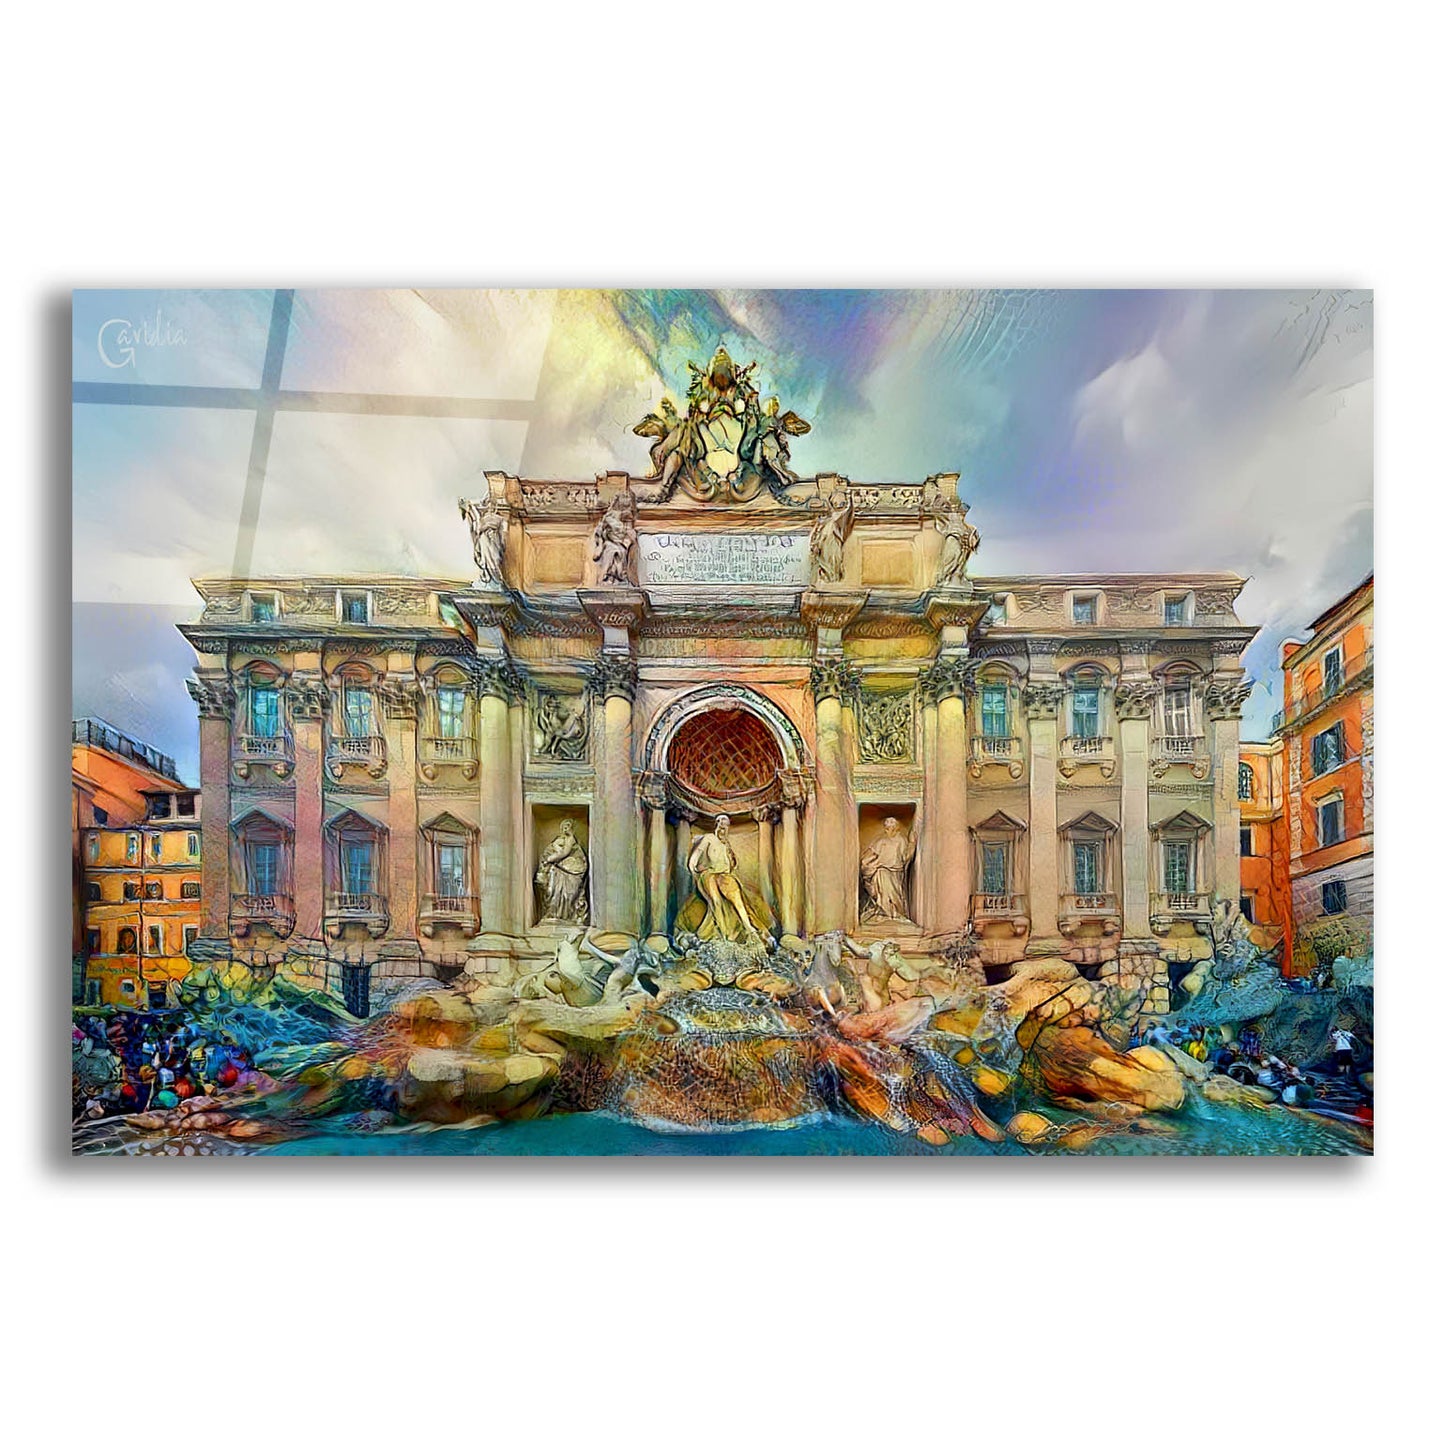 Epic Art 'Rome Italy Trevi Fountain' by Pedro Gavidia, Acrylic Glass Wall Art,24x16